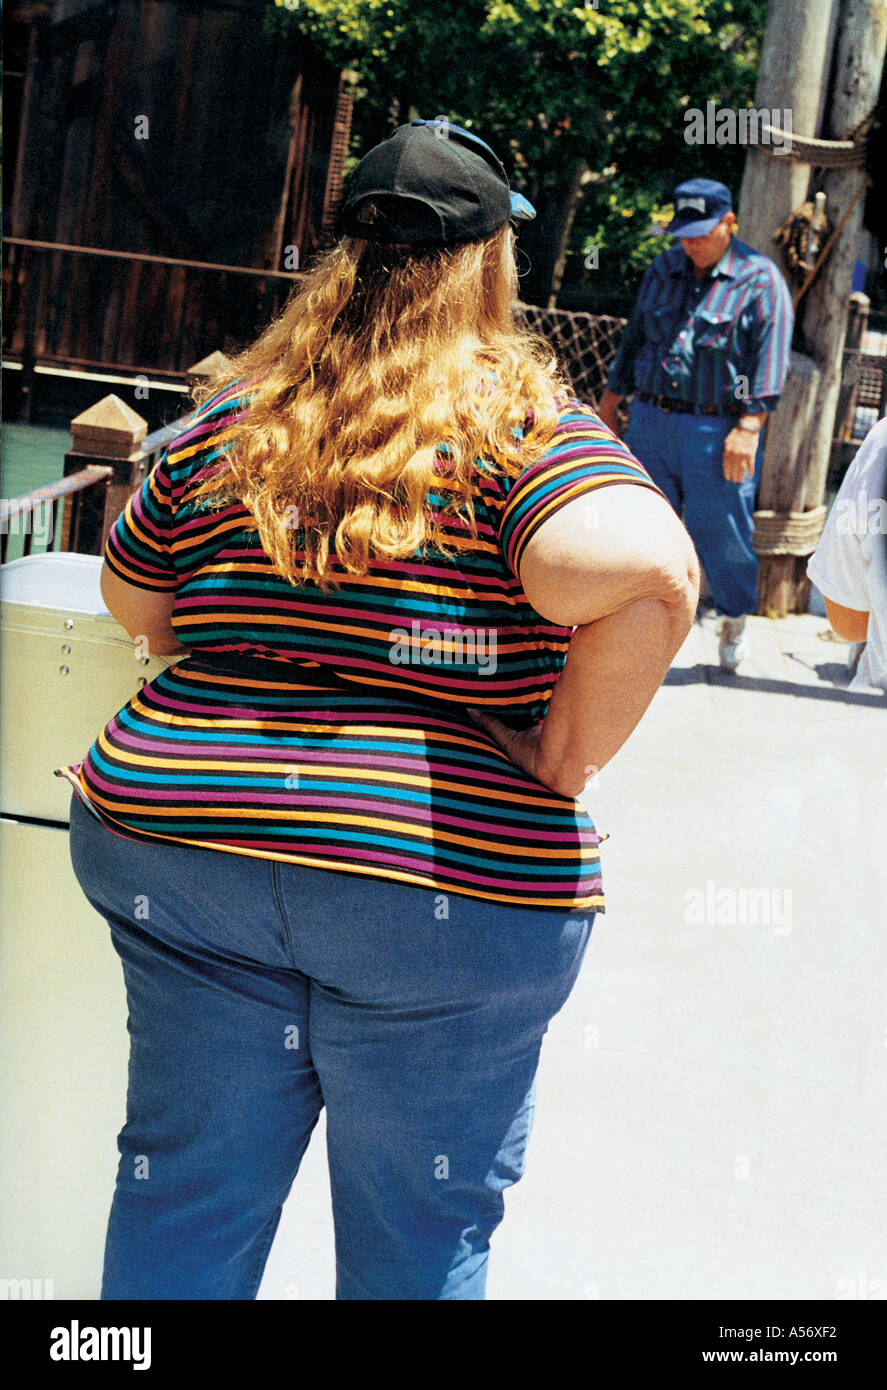 Big Fat Women Show 91